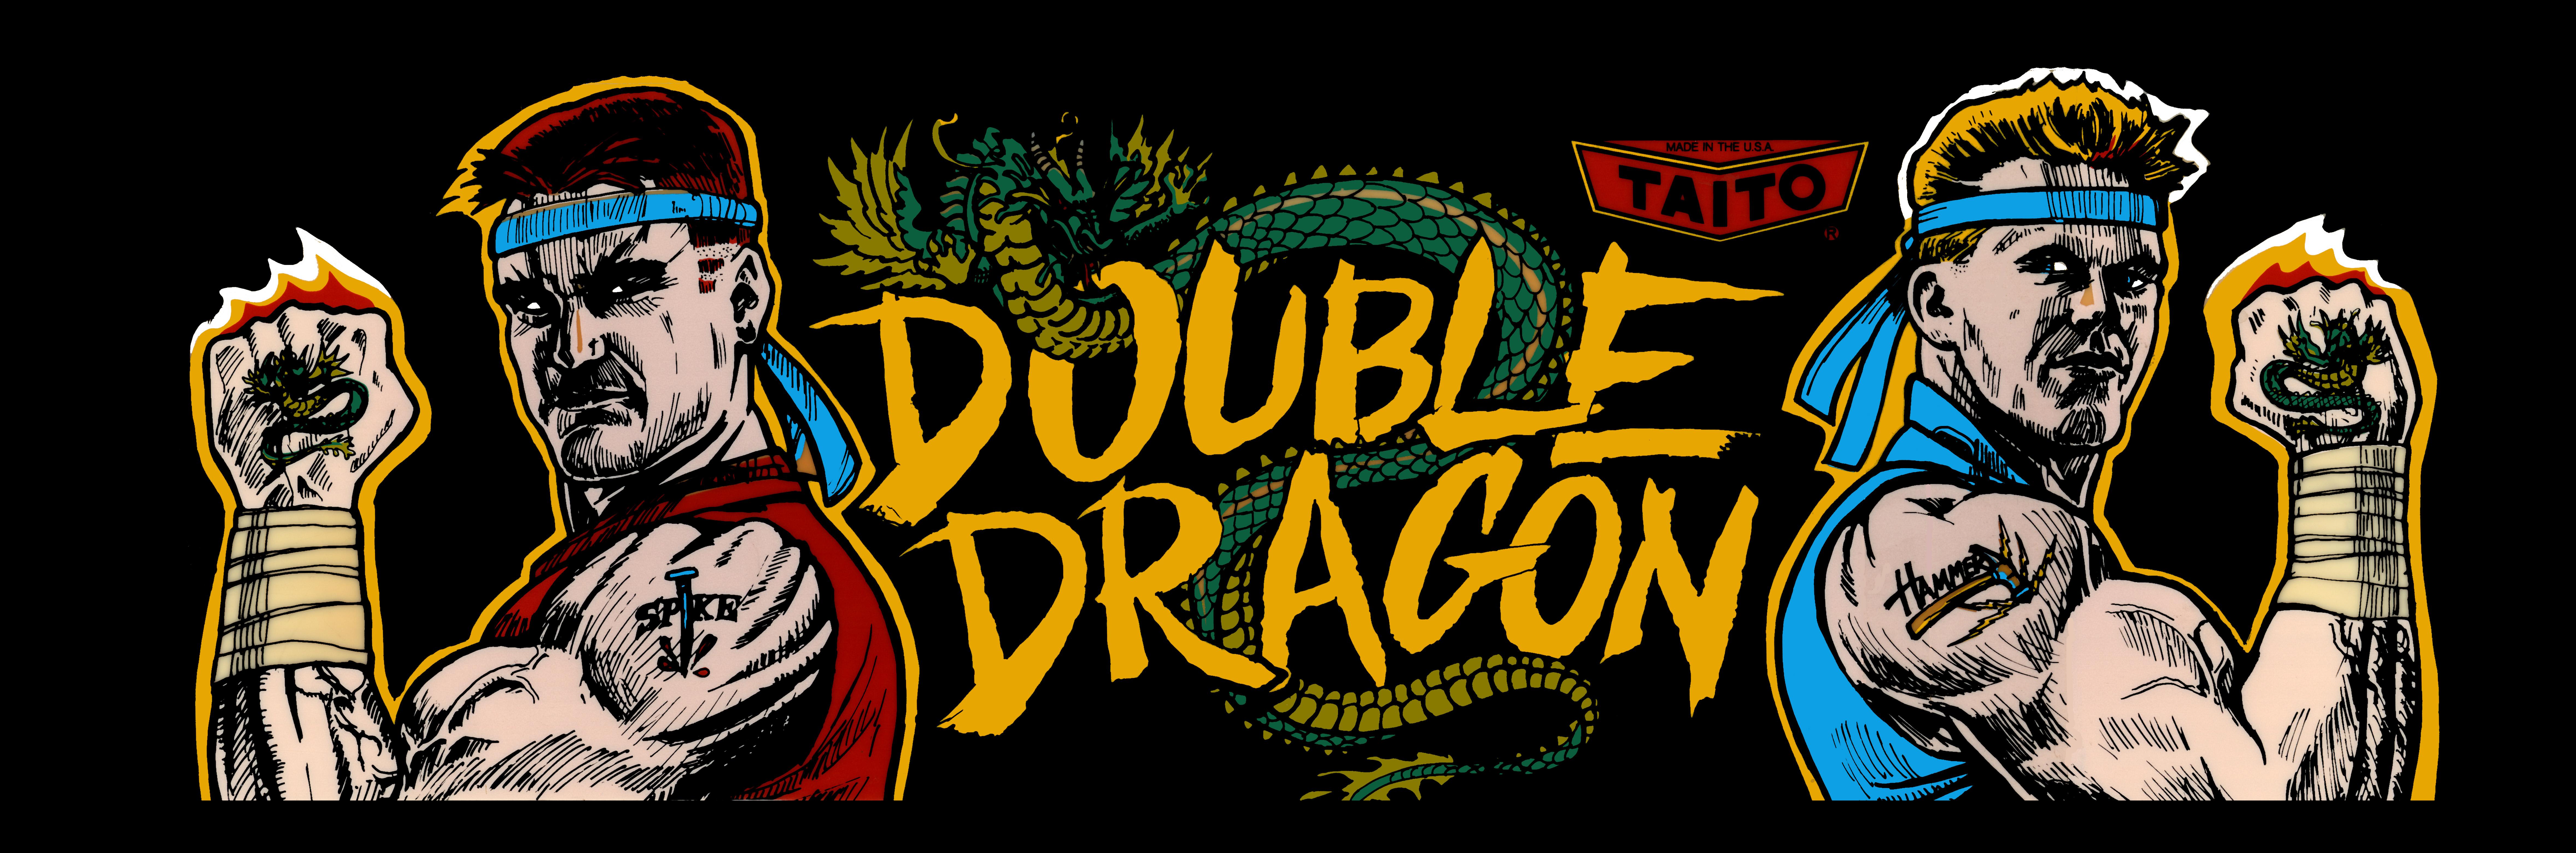 double dragon cartoon logo 1080